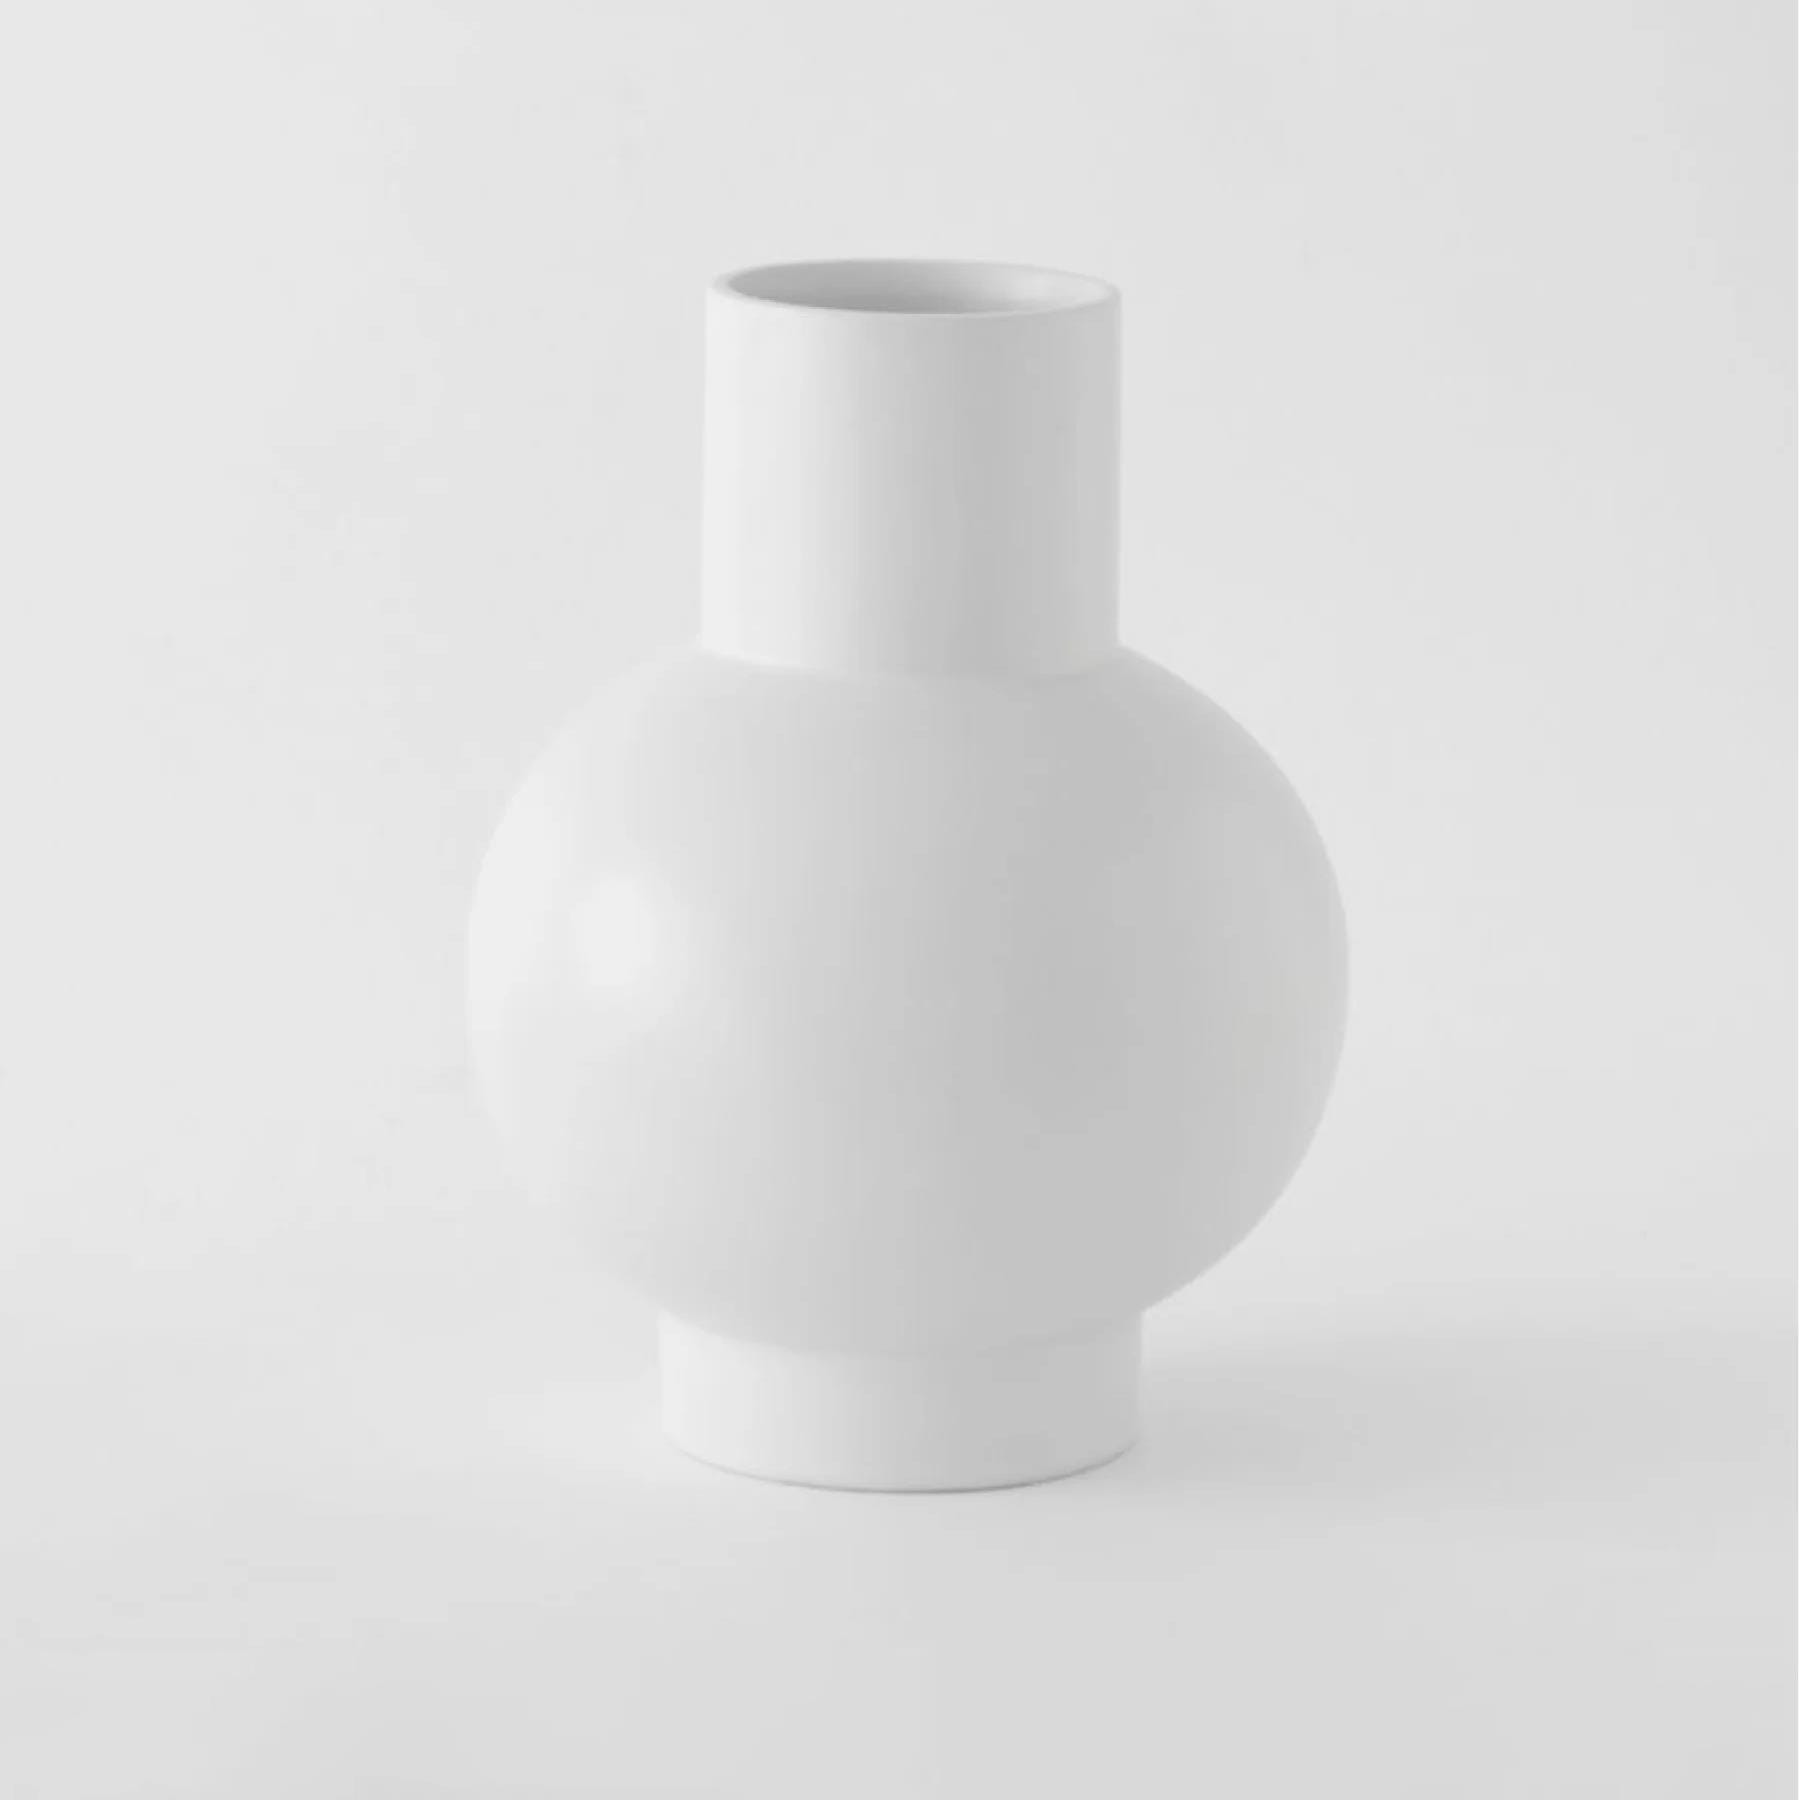 Strom Vase Vaporous Grey Extra Large Earthenware Grey